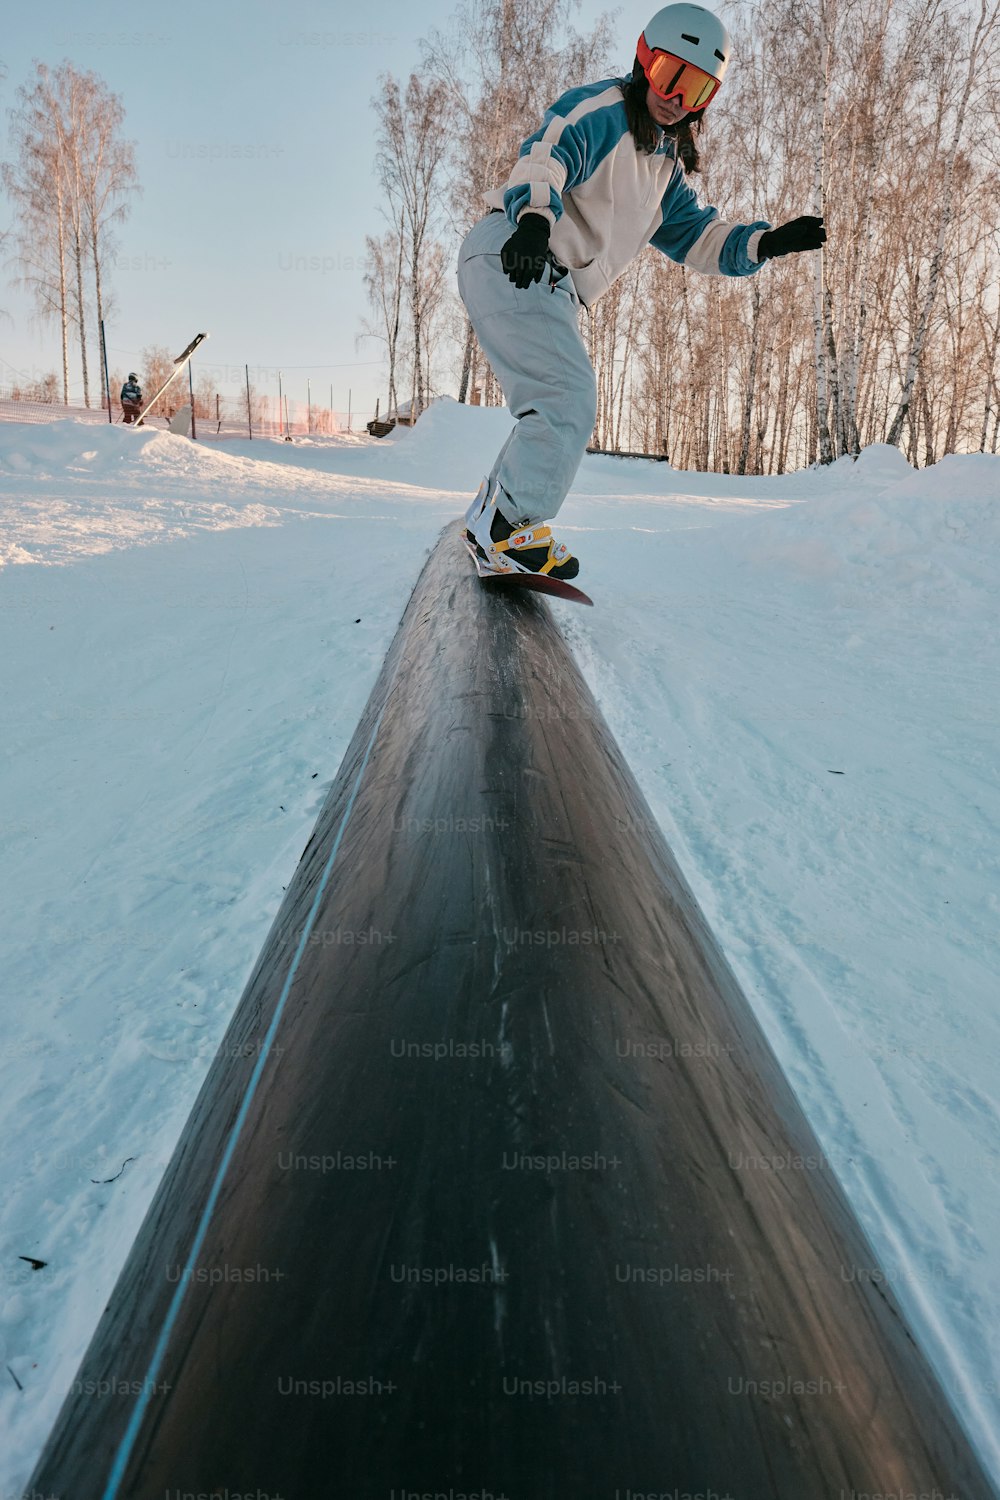 雪に覆われた斜面をスノーボードで駆け下りる男性